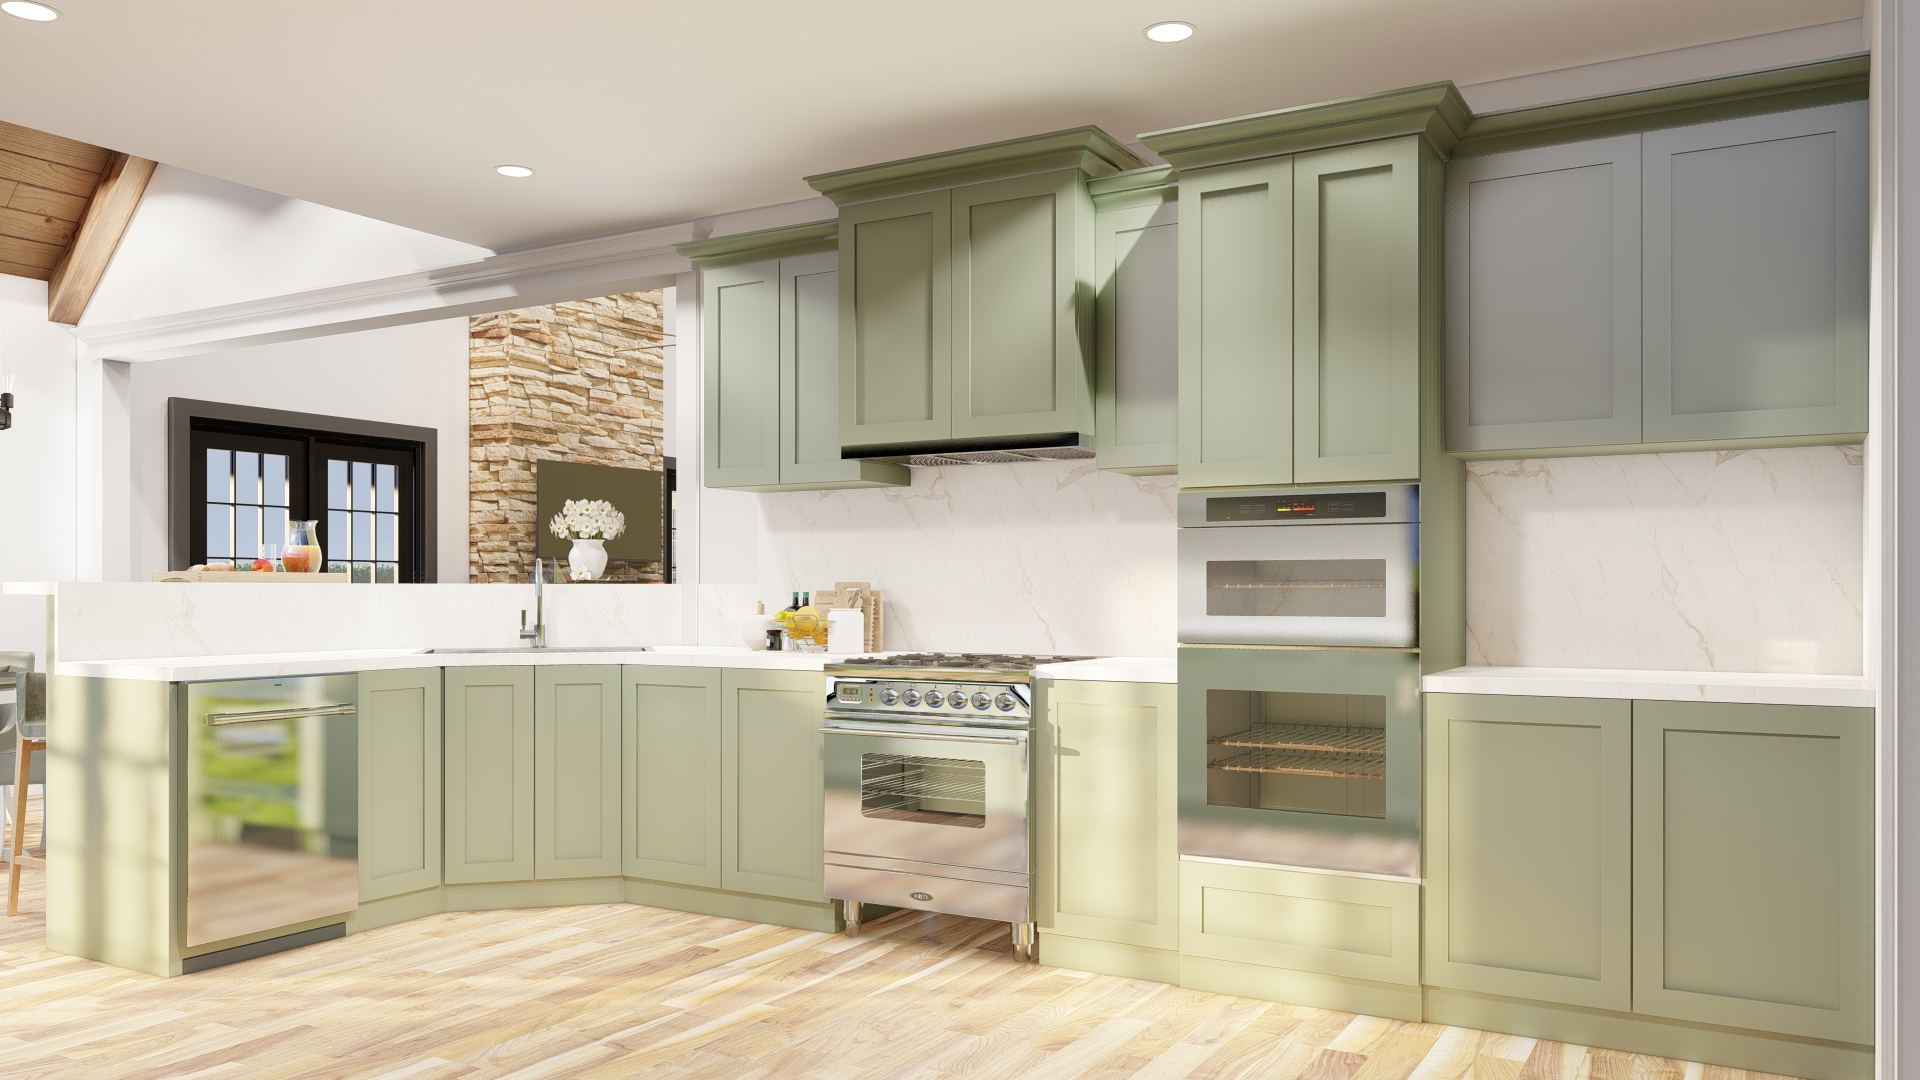 interior_kitchen_image